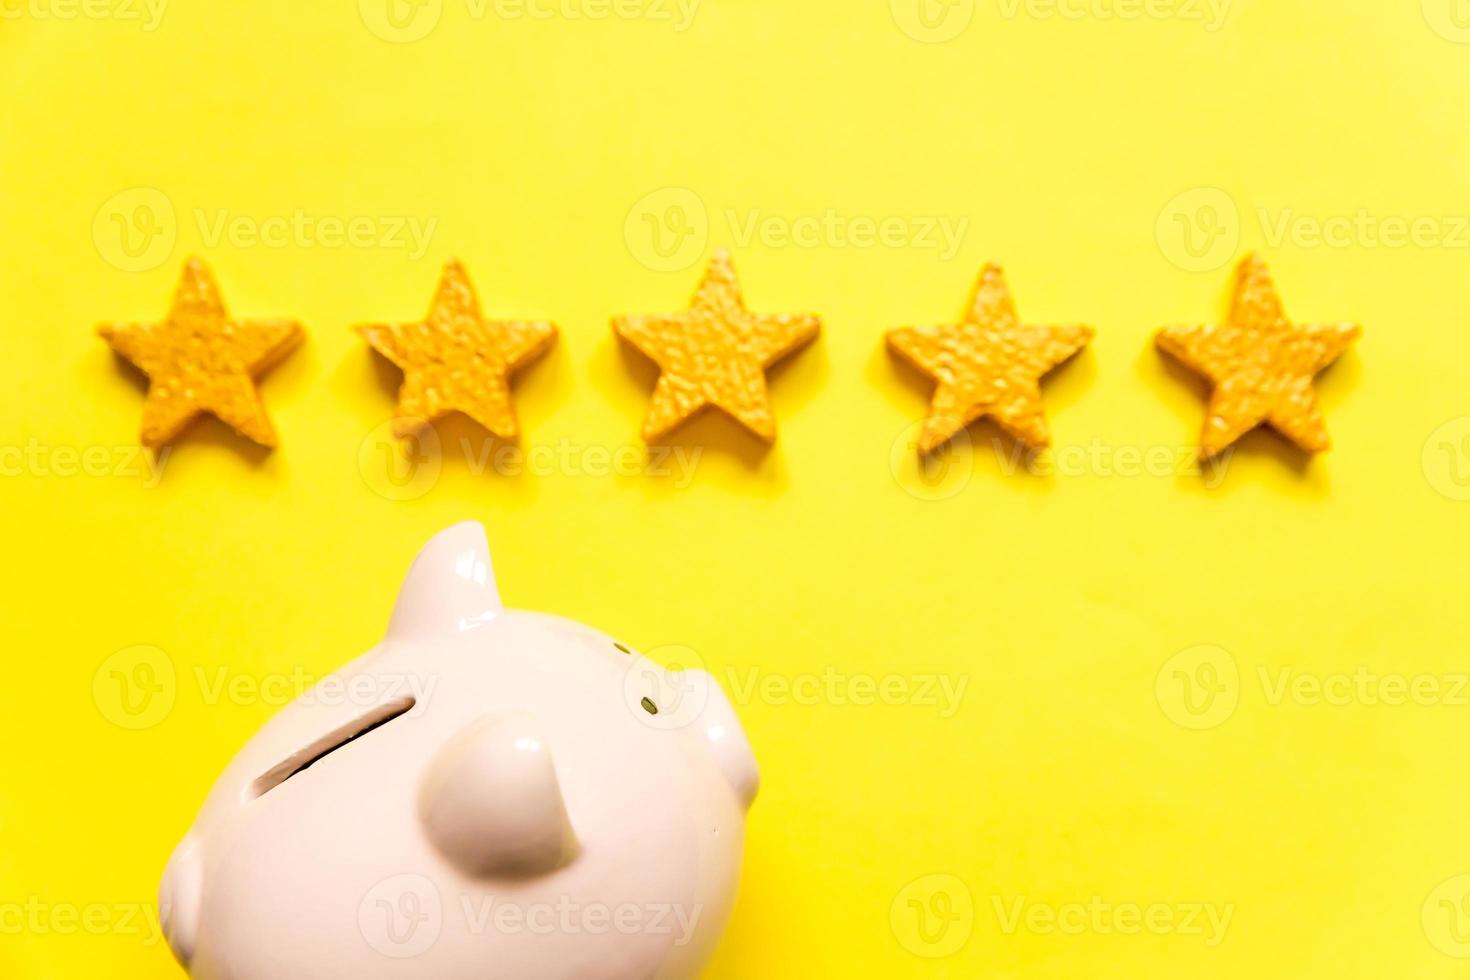 eenvoudig minimaal ontwerp spaarvarken 5 gouden sterren geïsoleerd op gele achtergrond. rating van de bank. besparing investeringsbudget zakelijke pensioen financieel geld bankieren concept. plat lag bovenaanzicht kopieerruimte. foto